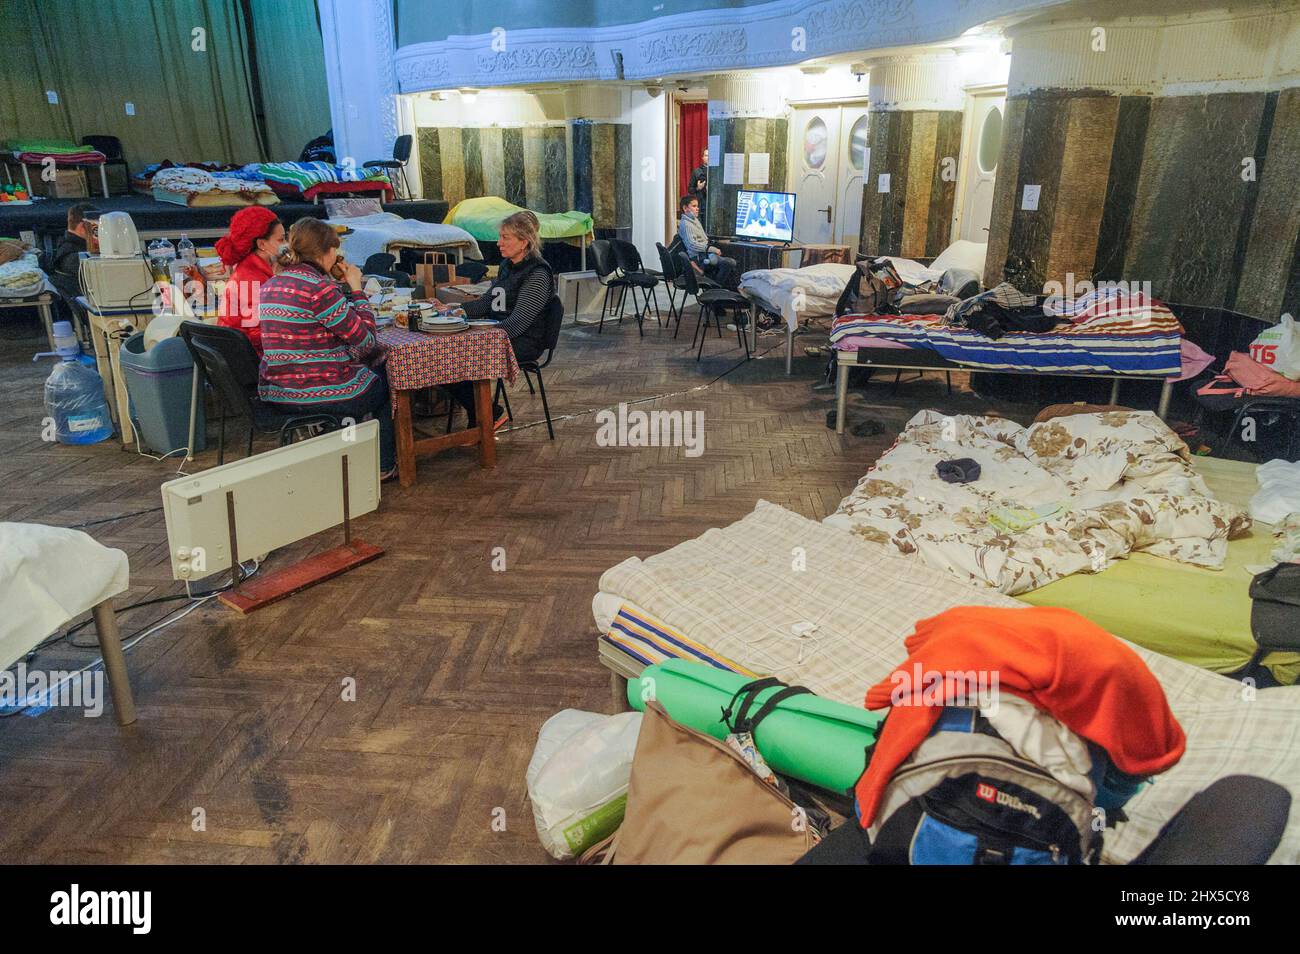 Le persone si rifugiano all'interno del Teatro Accademico Les Kurbas di Lviv. All'alba del 24 febbraio 2022, la Russia ha lanciato un'invasione su vasta scala dell'Ucraina. I veicoli militari russi hanno attraversato il confine ucraino in diversi luoghi, tra cui la Bielorussia. Foto Stock